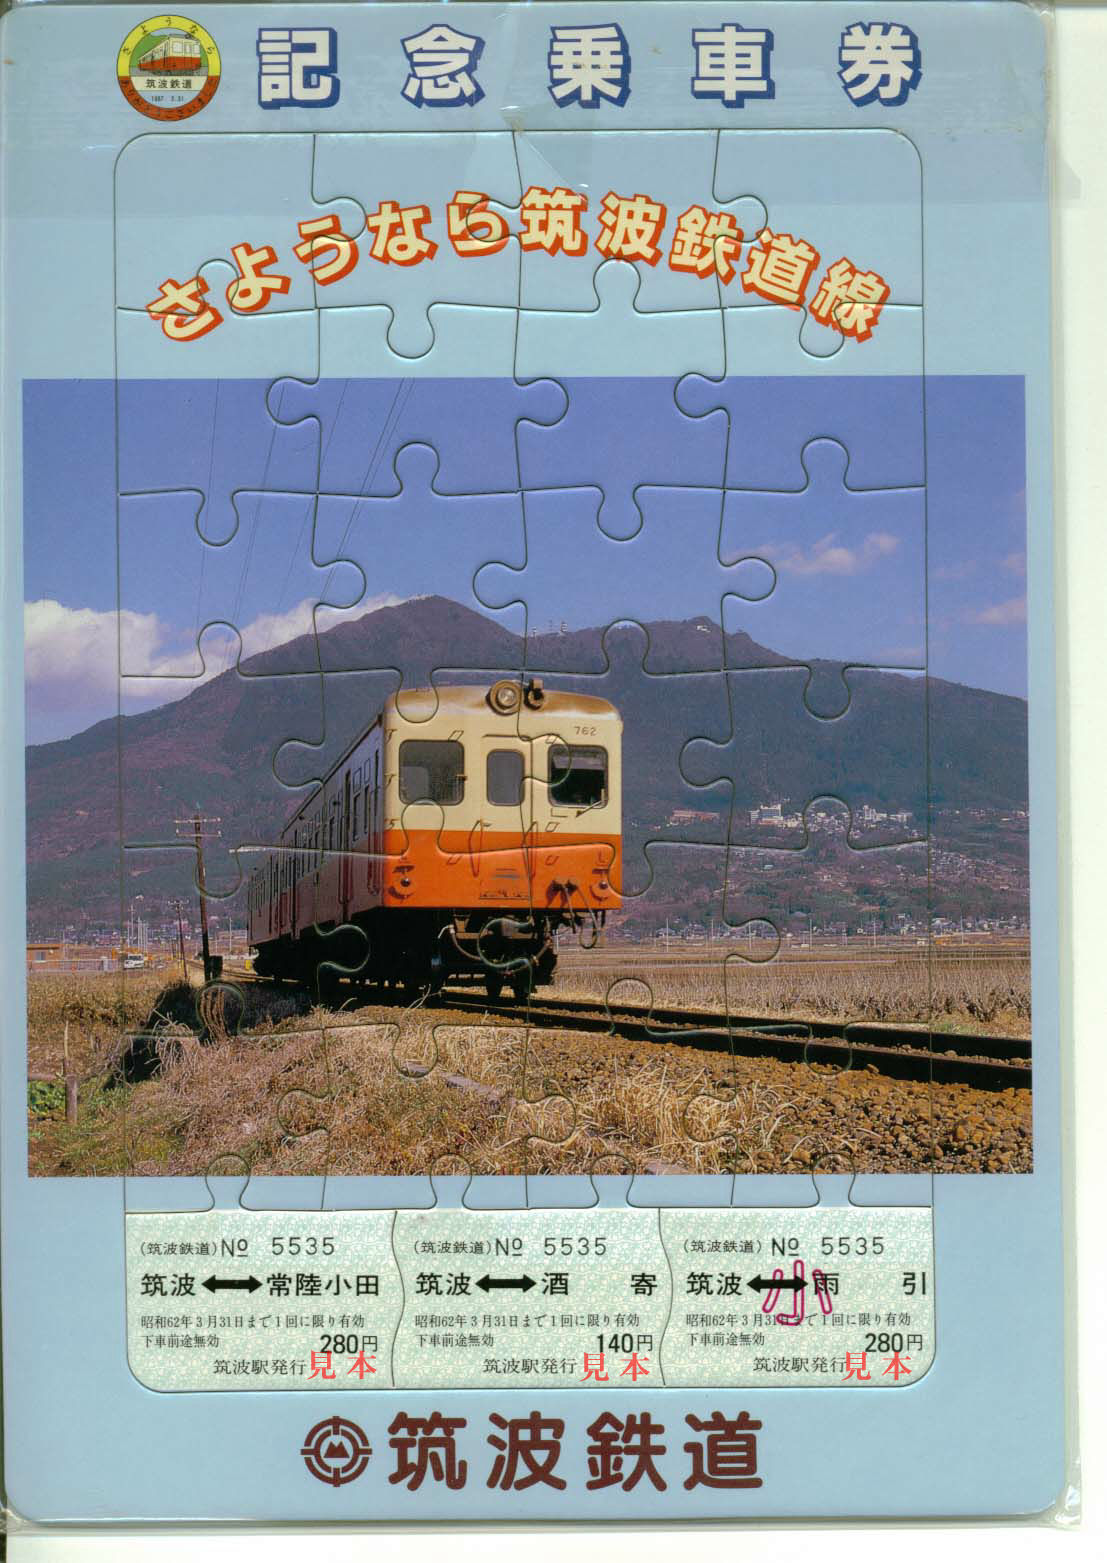 記念切符: 筑波鉄道、廃止記念乗車券。